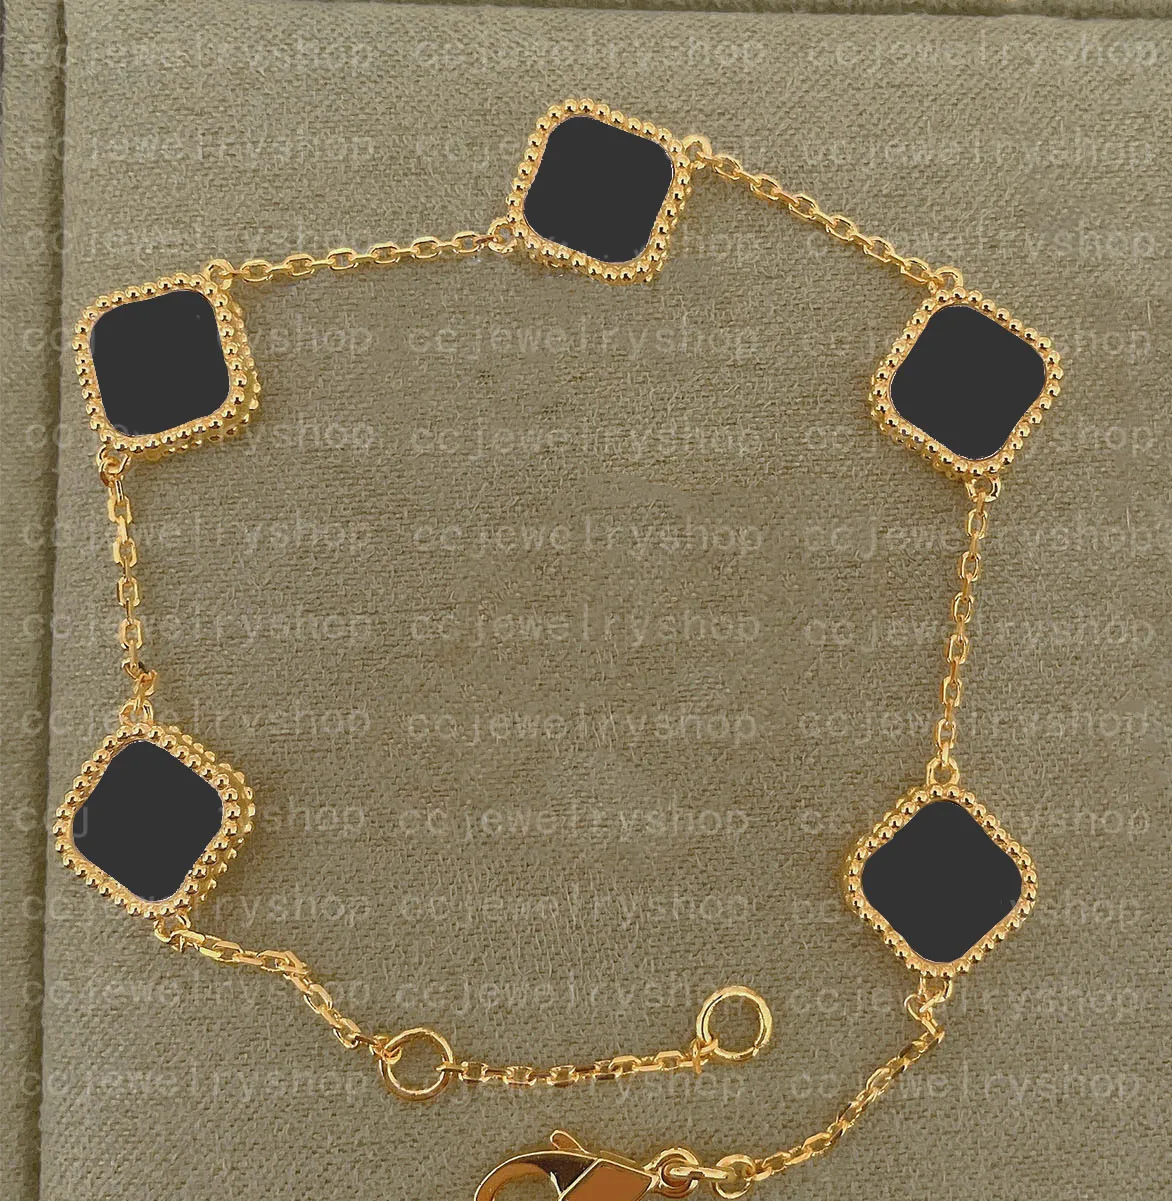 Mini dolce argento sterling classico 4 quadrifoglio ciondolo braccialetto orecchino collana oro 18 carati conchiglia di agata madreperla Wom2809